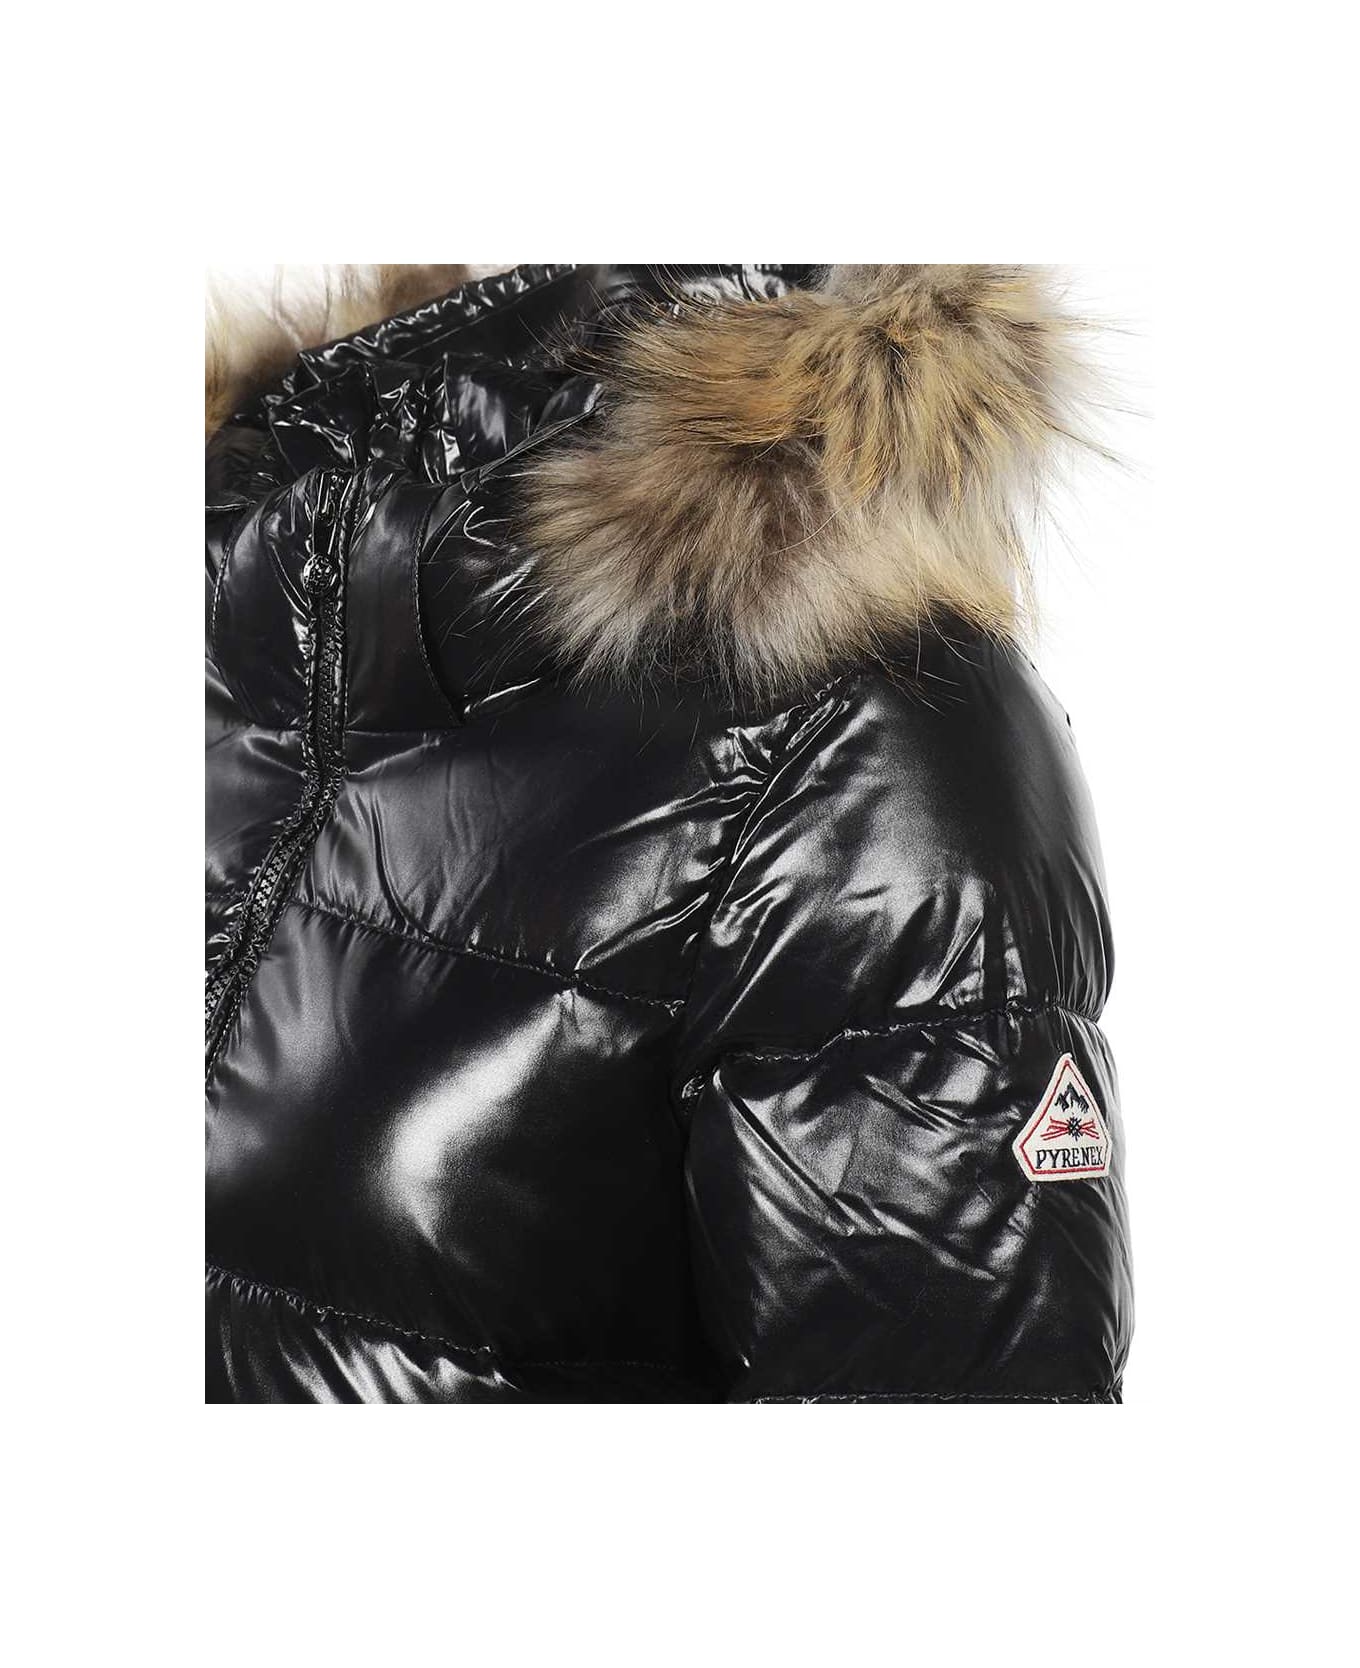 Pyrenex Fur Trimmed Hood Down Jacket - black コート